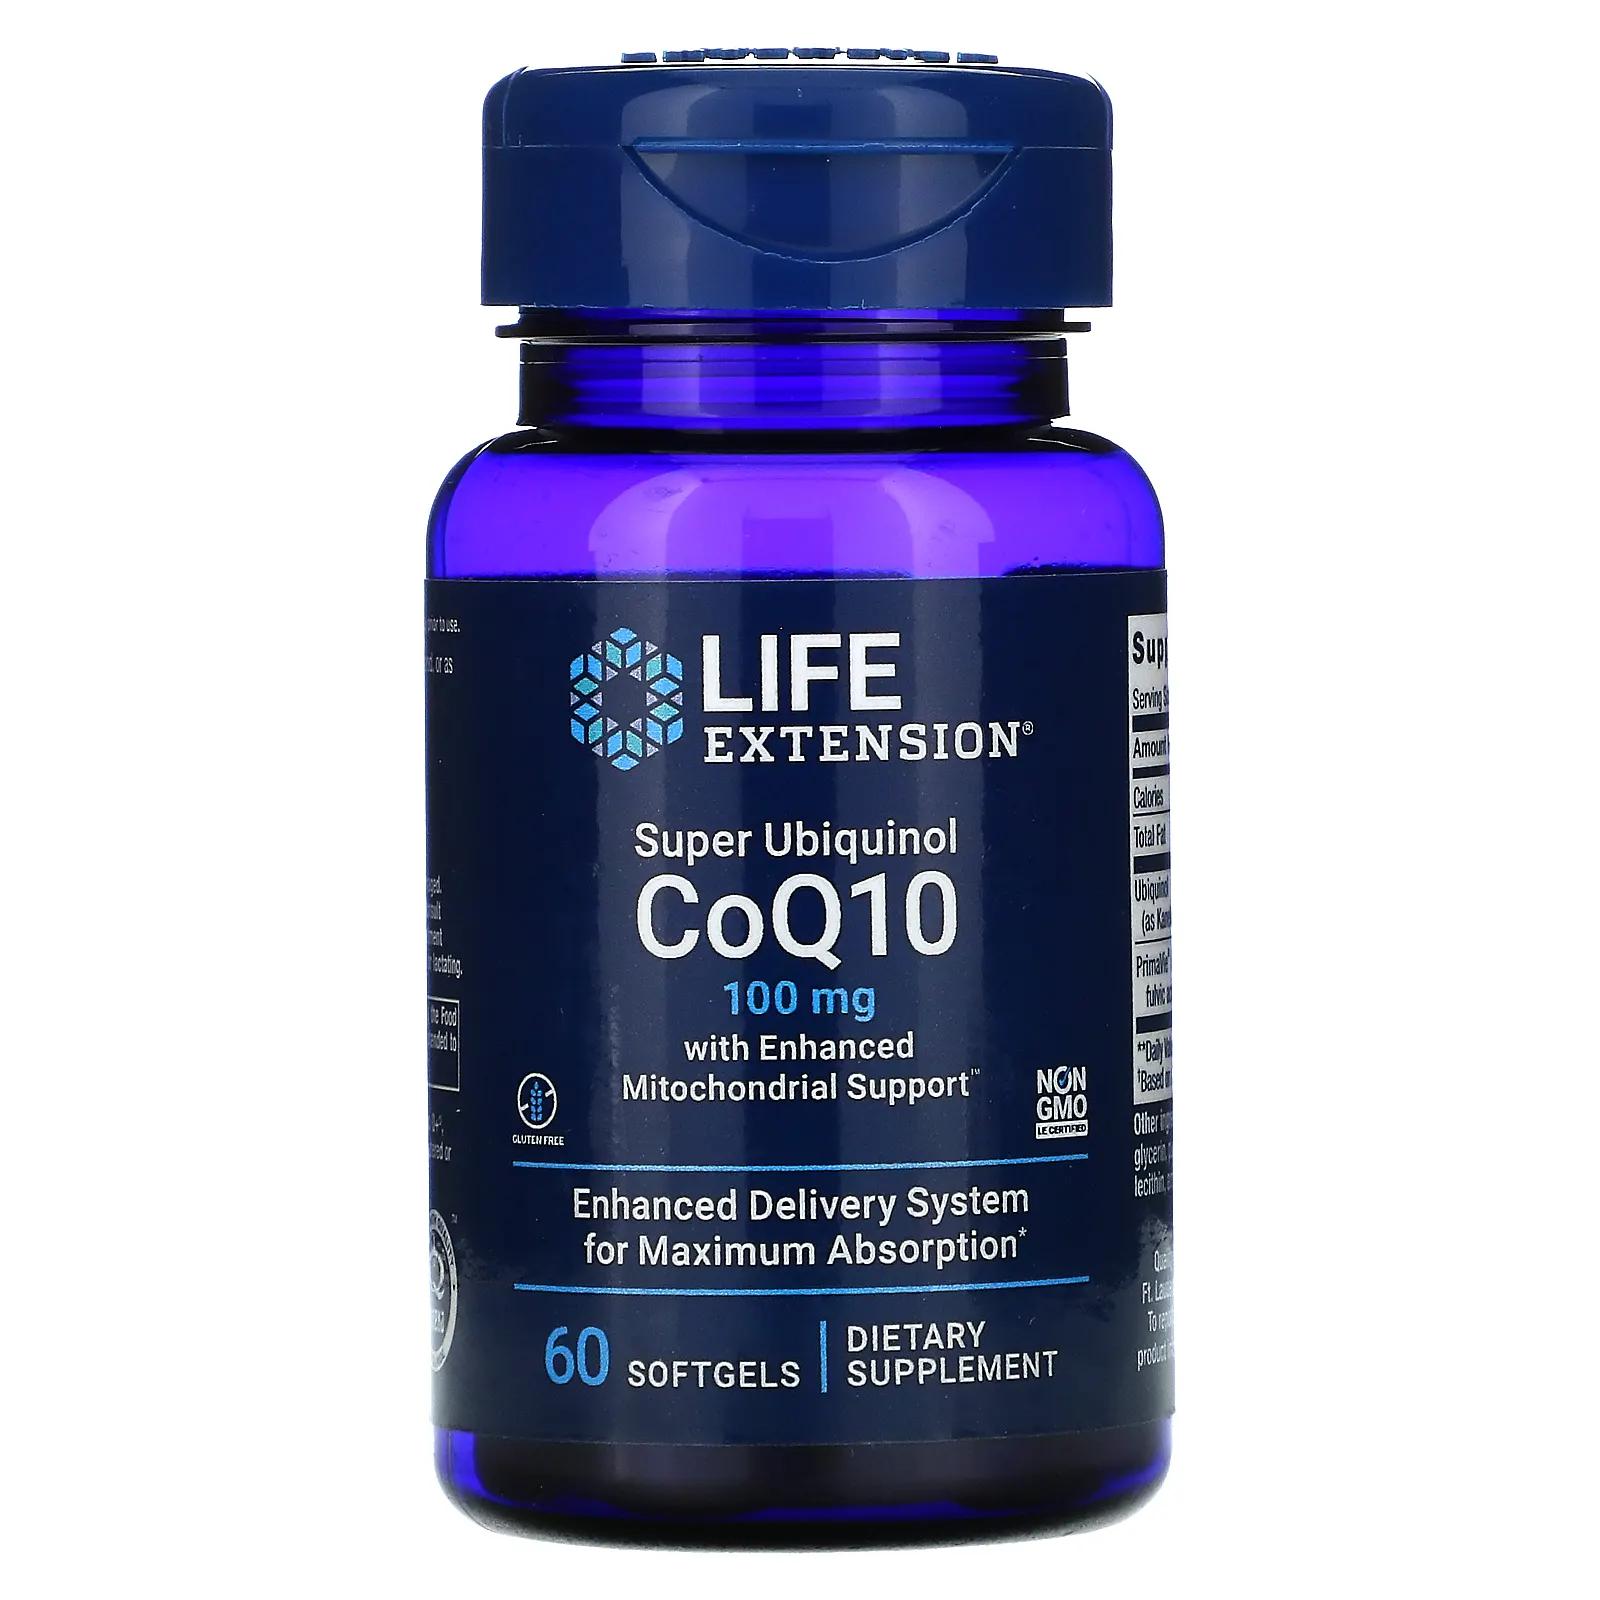 life extension таблетки life extension mix с дополнительным ниацином 240 таблеток Life Extension Super Ubiquinol CoQ10 with Enhanced Mitochondrial Support 100 mg 60 Softgels